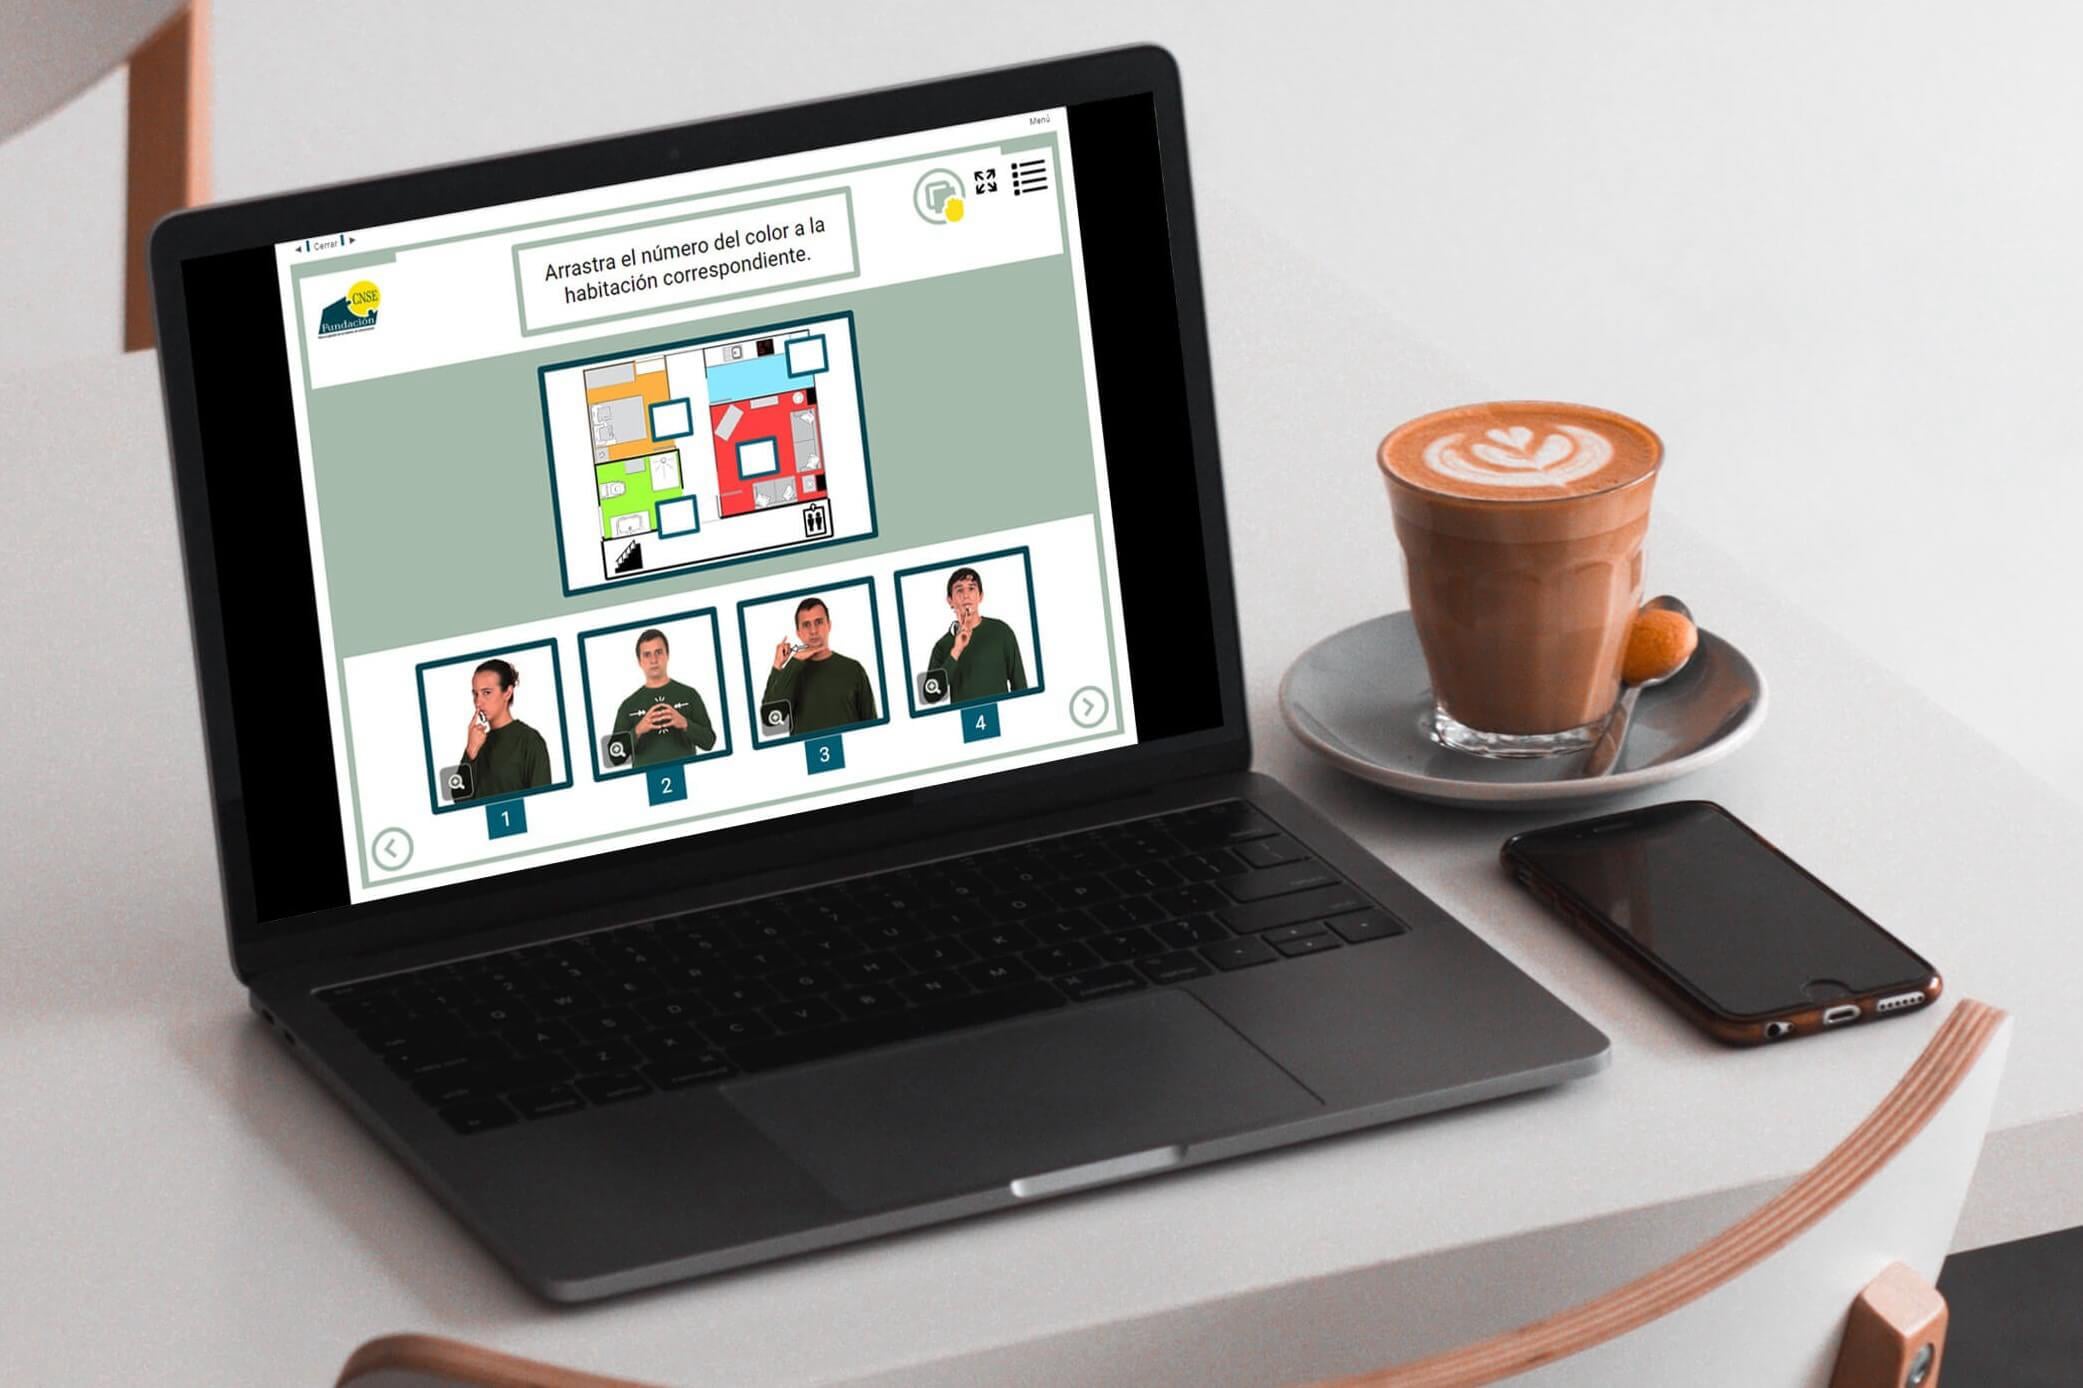 Imagen de un ordenador portátil con el curso online de lengua de signos. En la mesa hay un café y un teléfono móvil